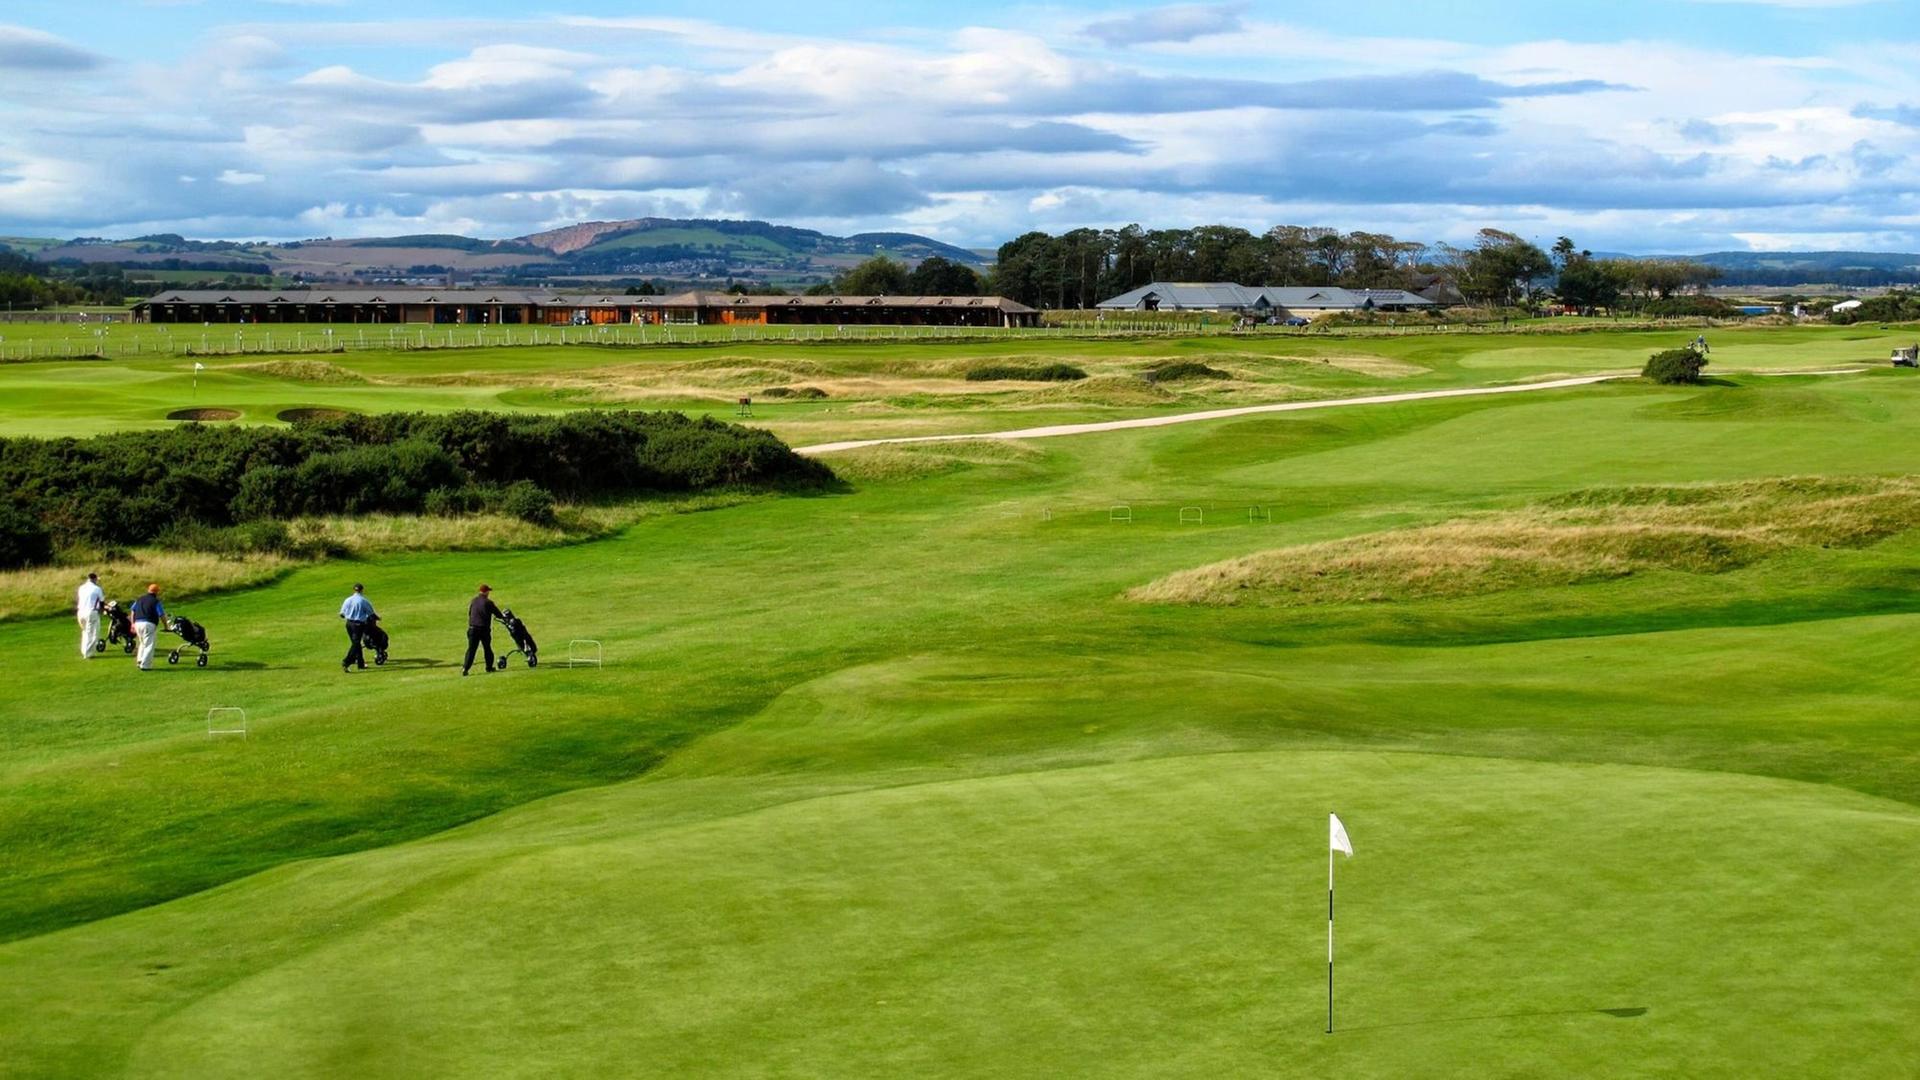 Vereinzelte Golfspieler auf dem großen grünen Jubilee Course in St. Andrews in Schottland.